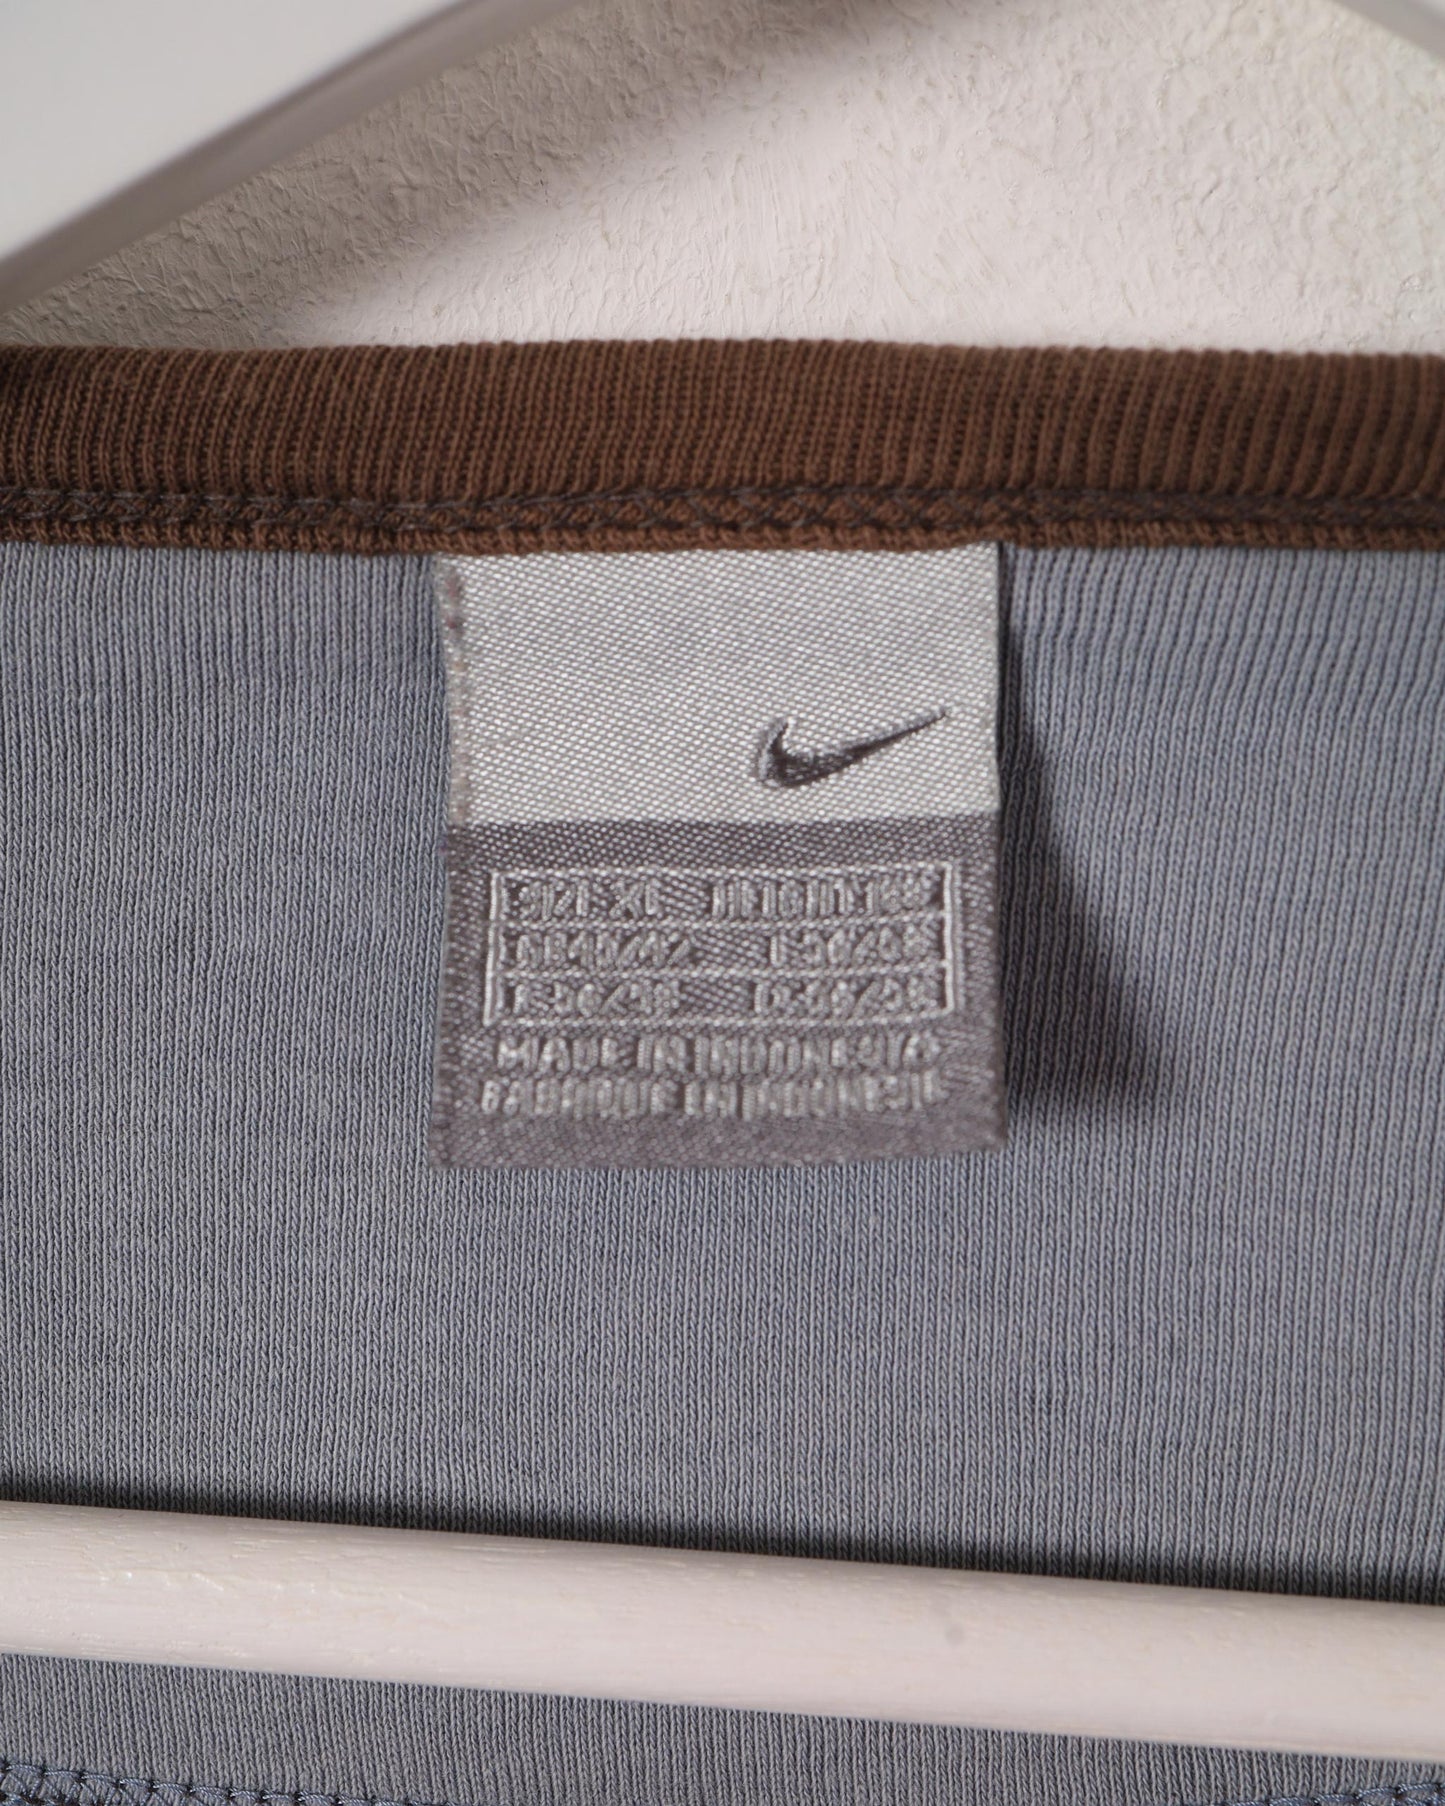 Maglietta a maniche lunghe Nike